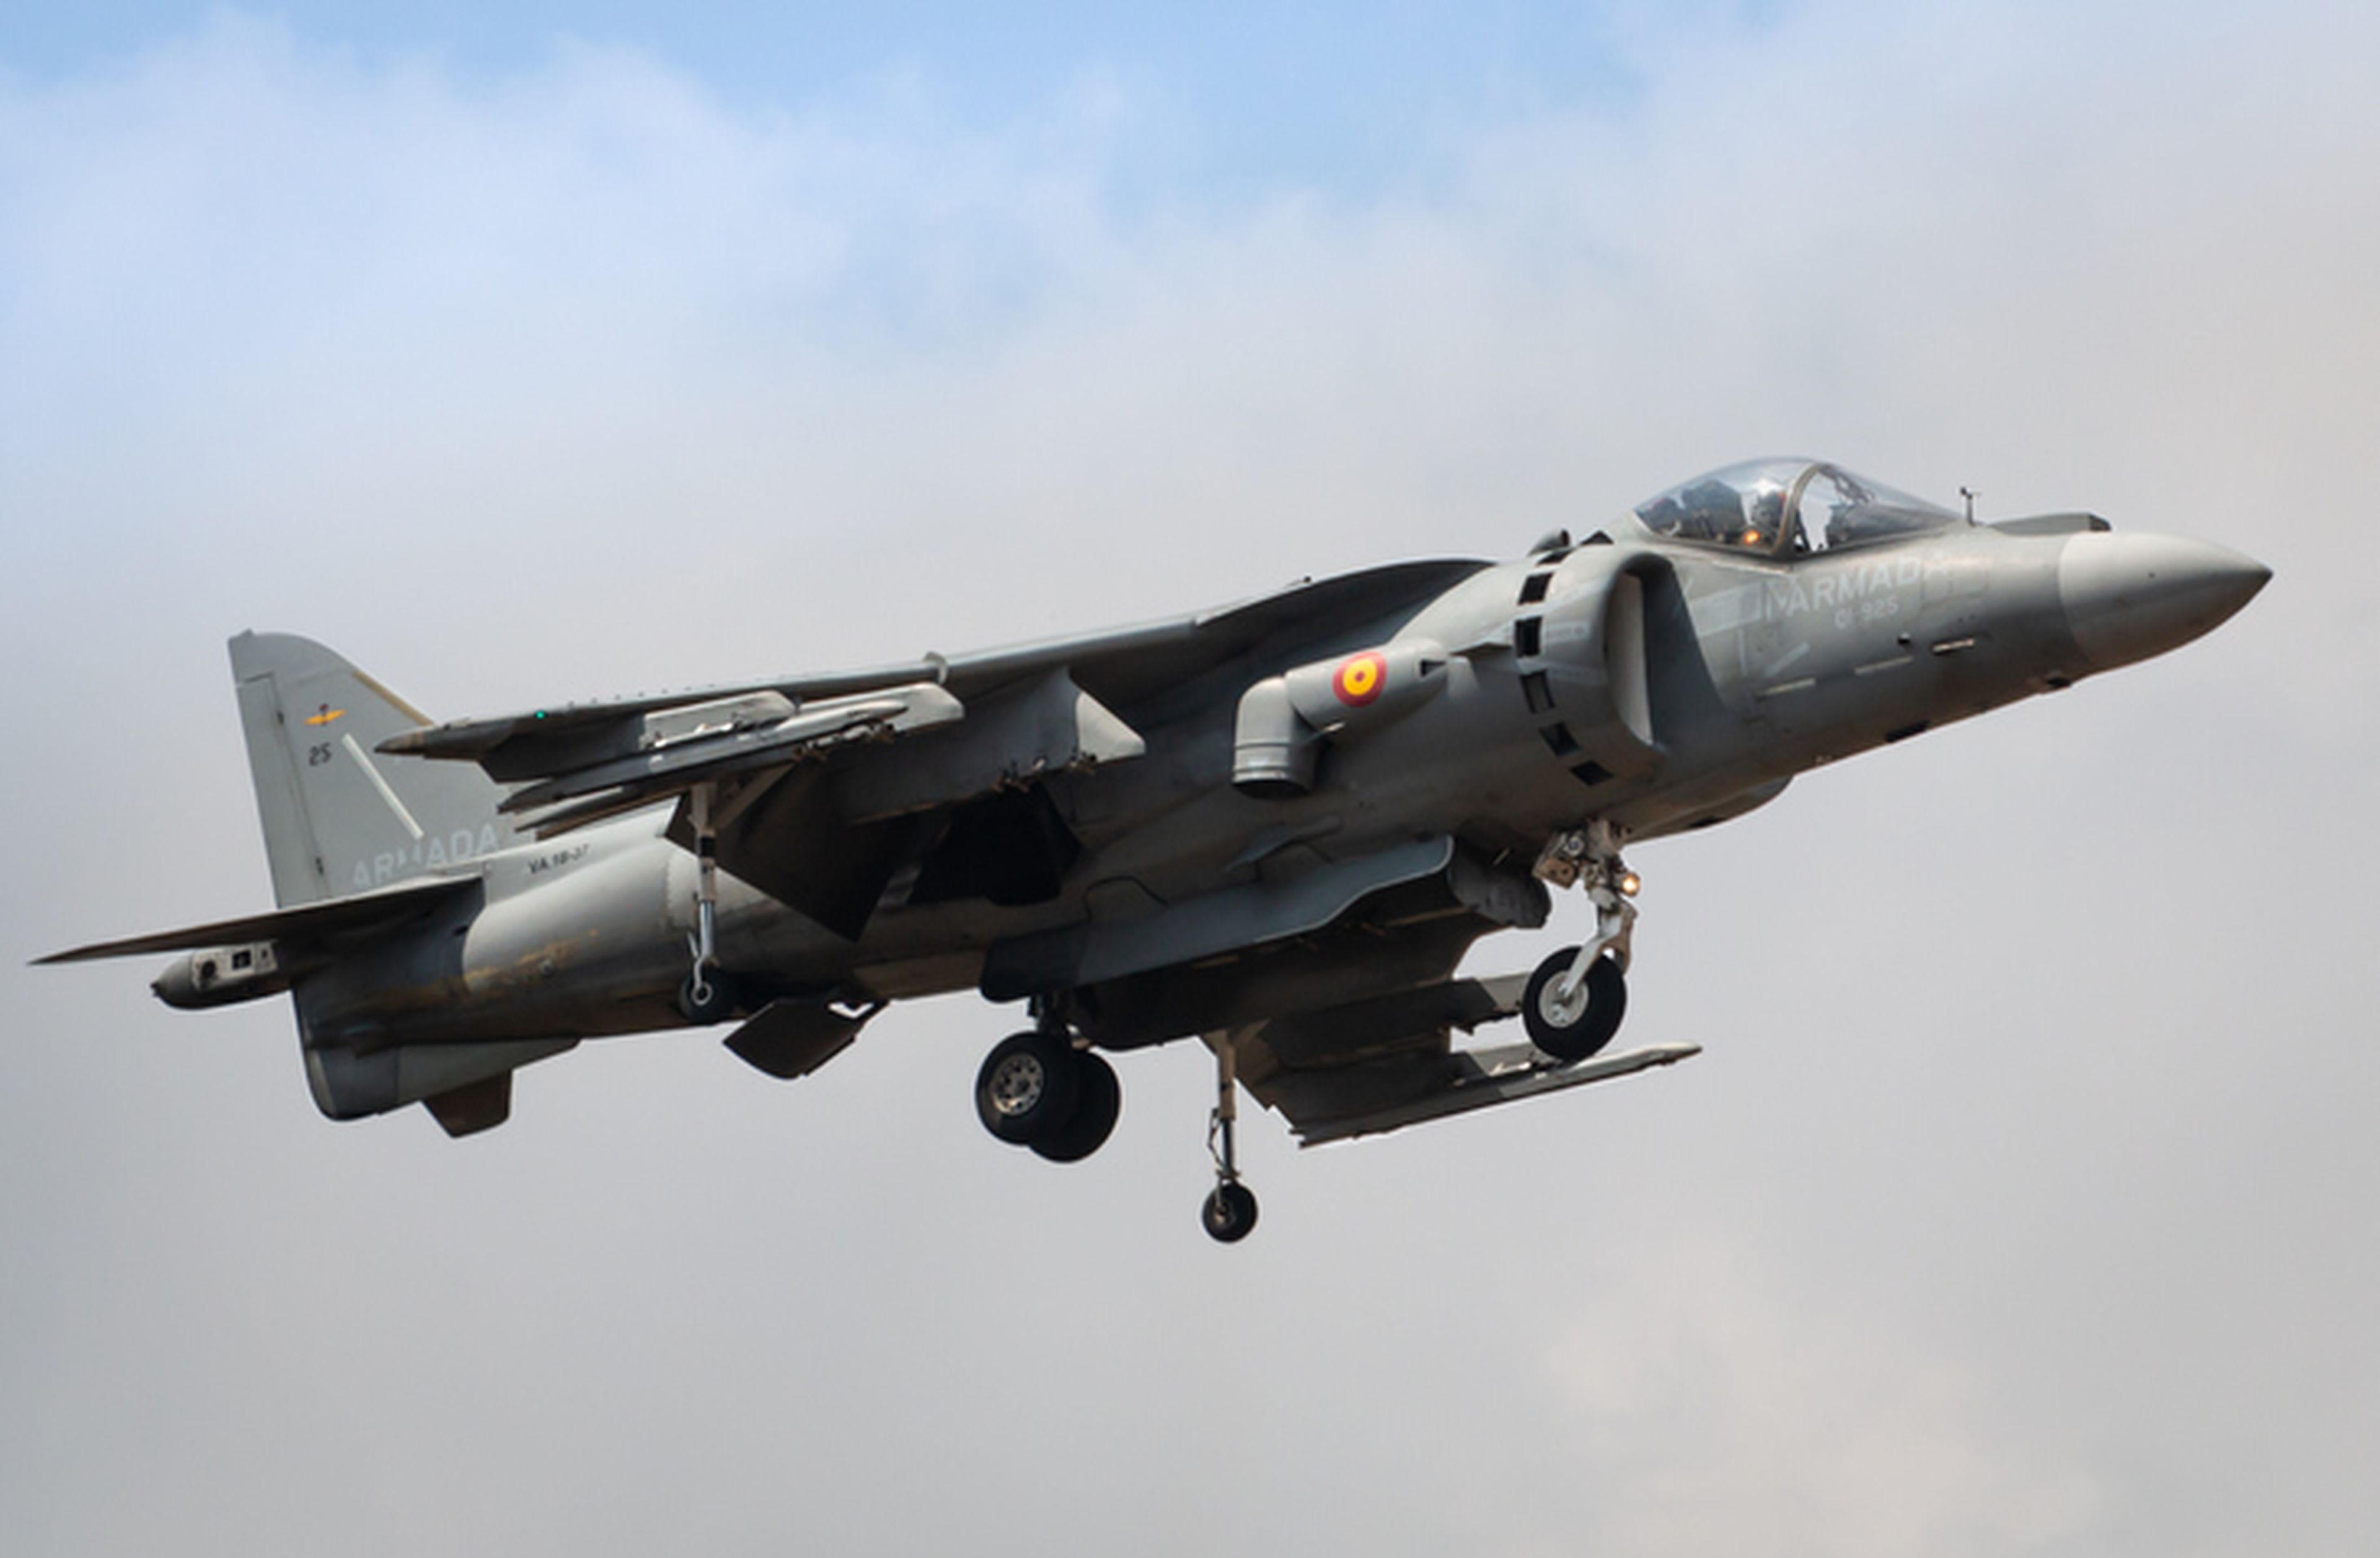 Un caza Harrier realizando un despegue vertical.